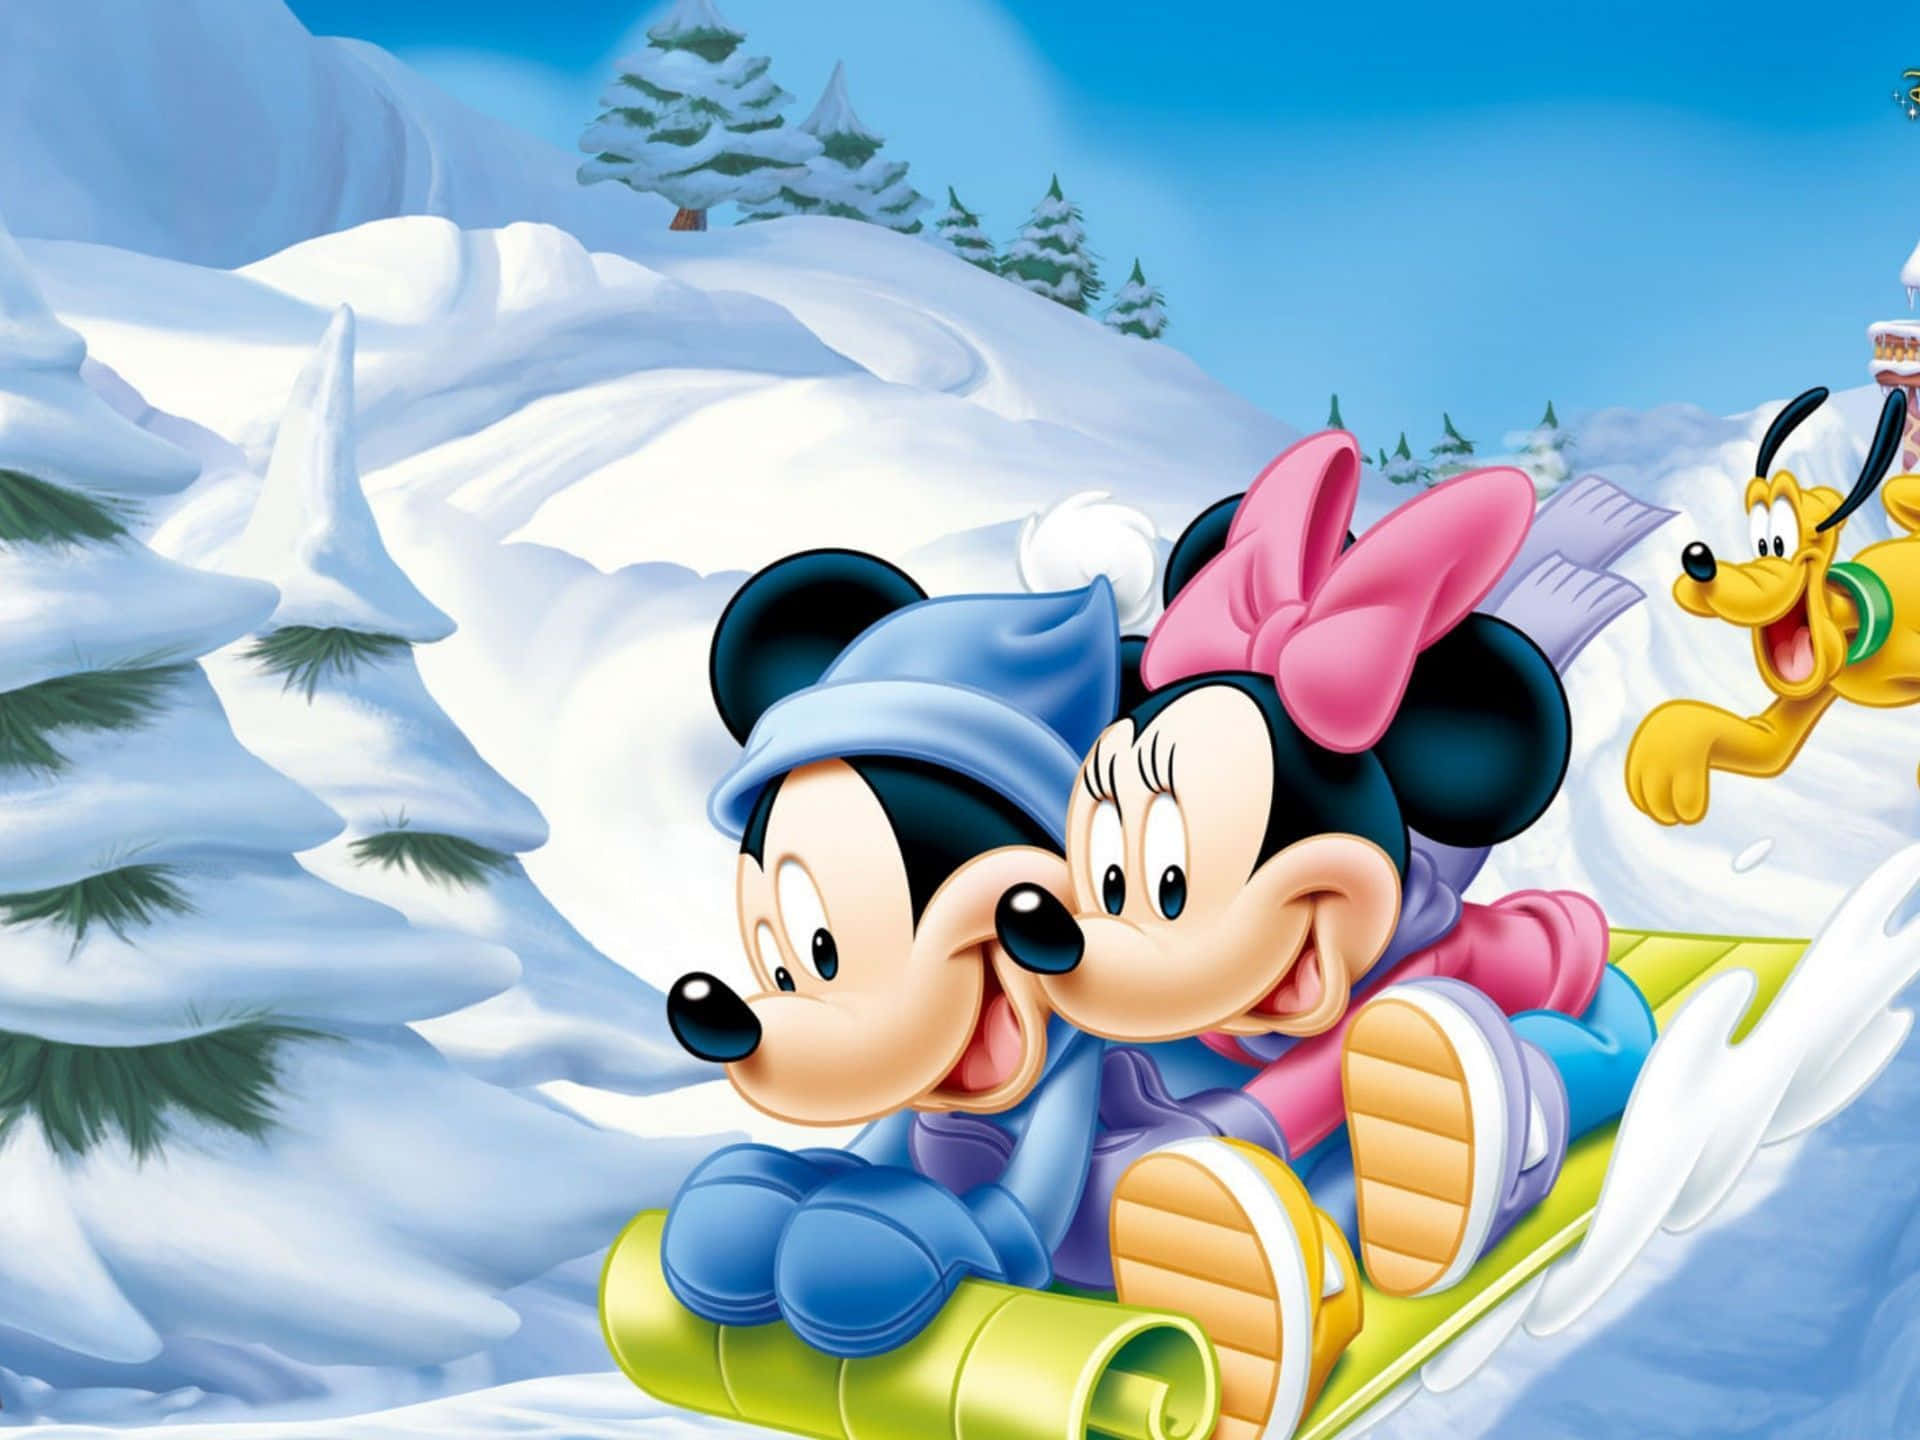 Mickiemus Bjuder På Glädje Till Generationer Av Disney-fans.